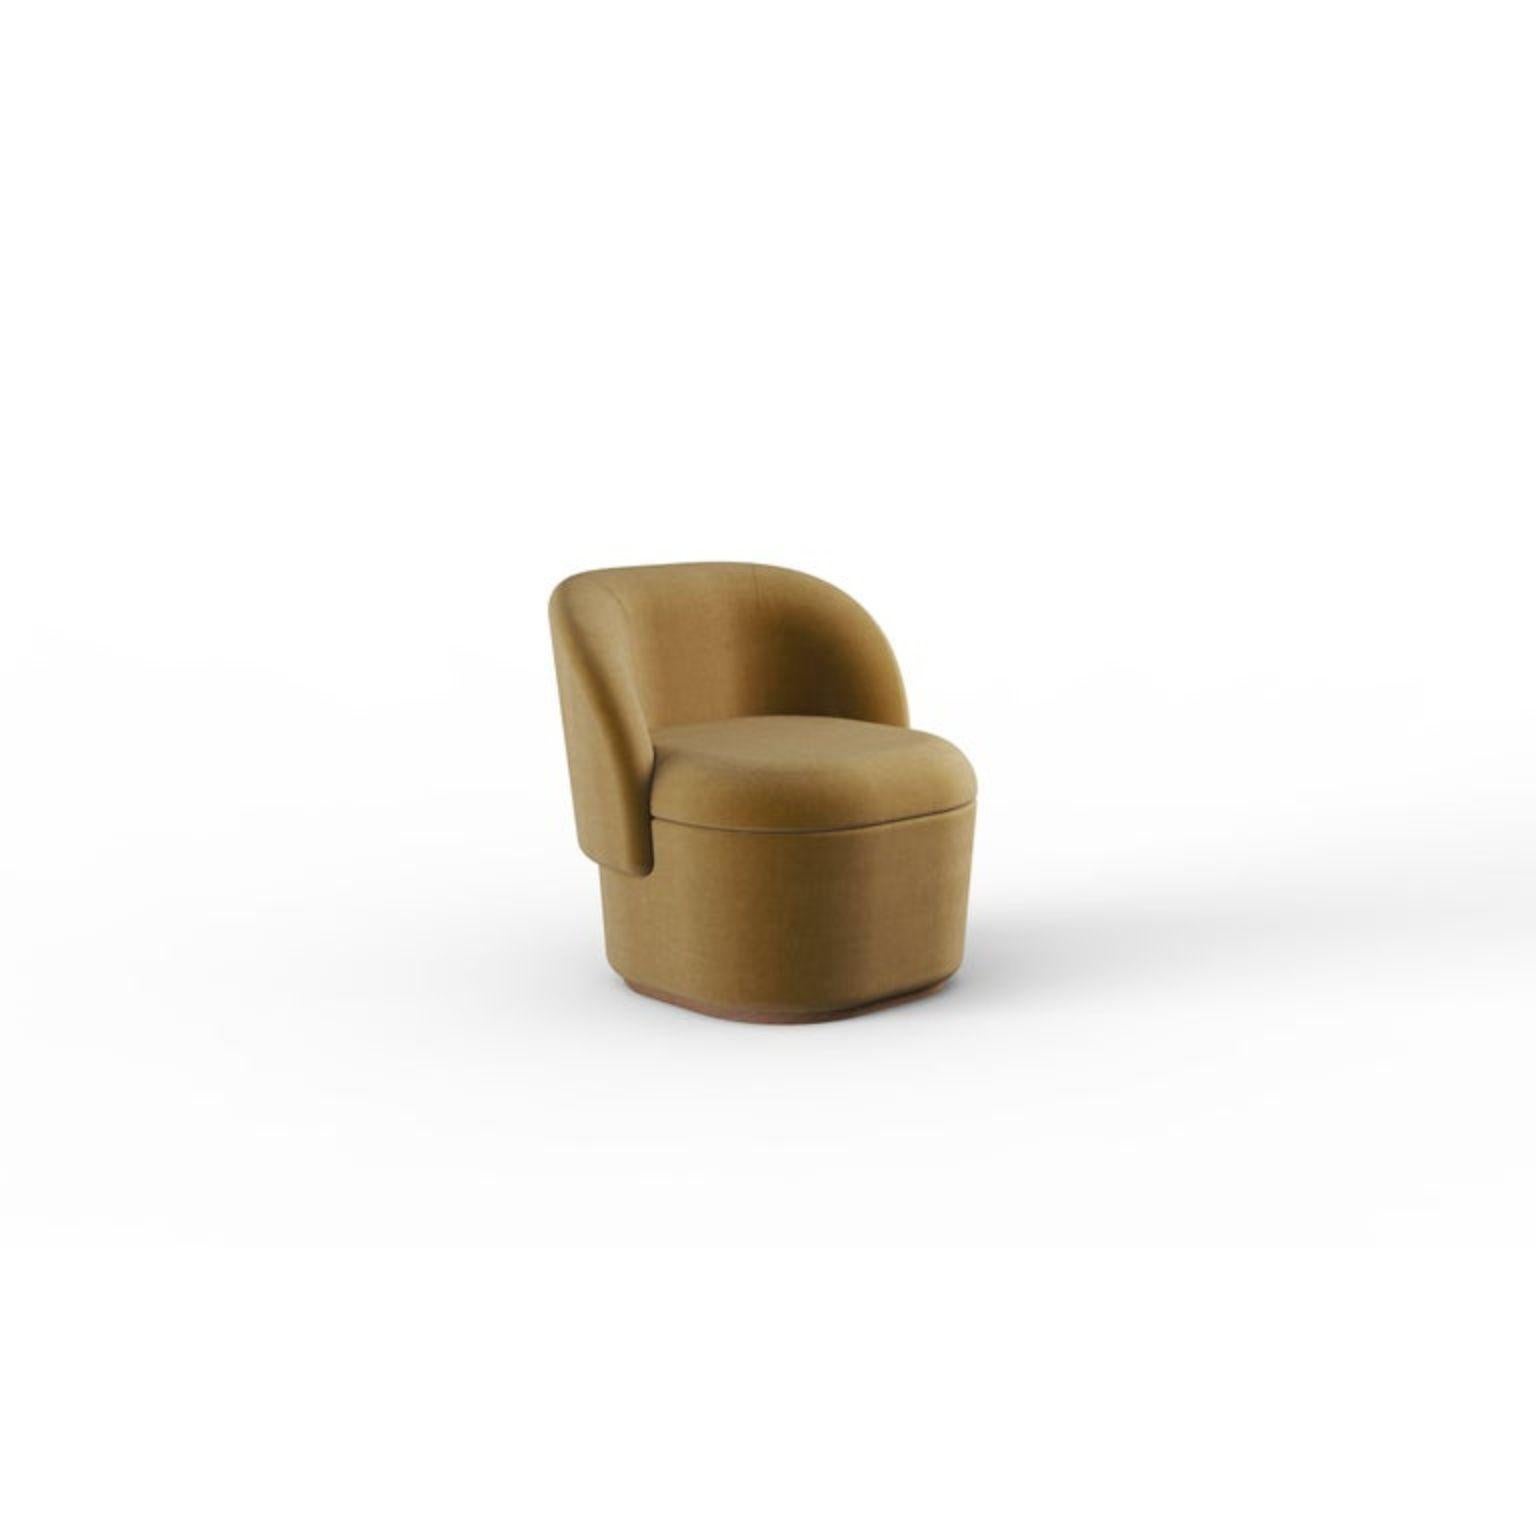 Fauteuil Bisou contemporain
Dimensions : P 70 x L 65 x H 74 cm
Hauteur du siège : 44 cm
Matériaux : Tissu, bois massif
Également disponible en cuir.



